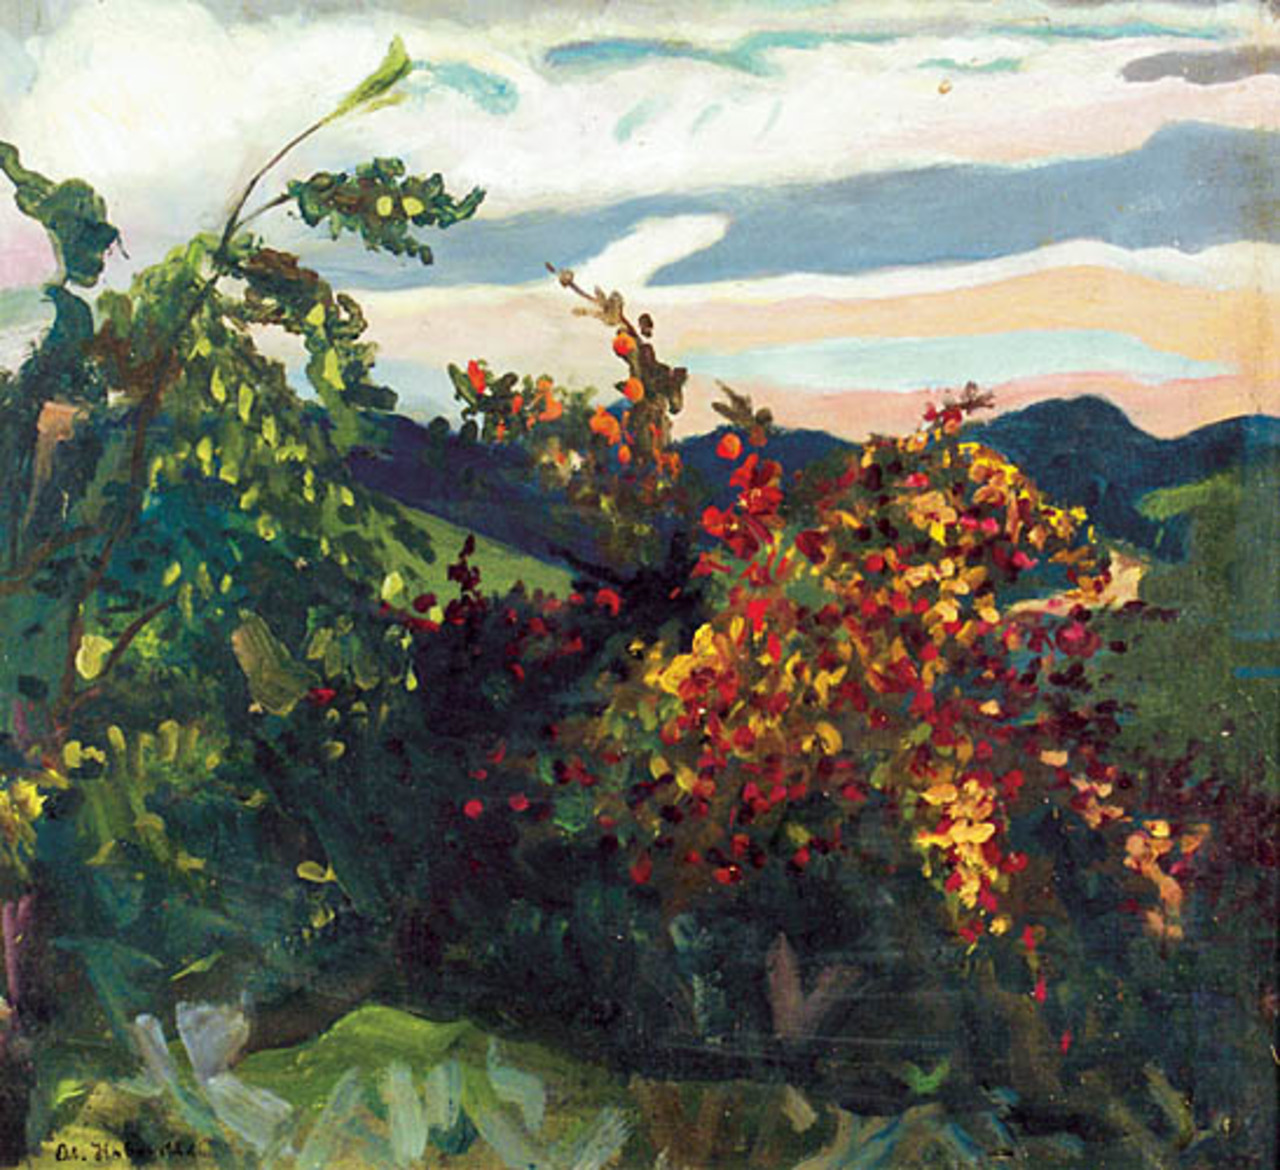 Ołeksa Nowakiwski (1872-1935), "Kwitnące krzewy", lata 30., źródło: Rempex